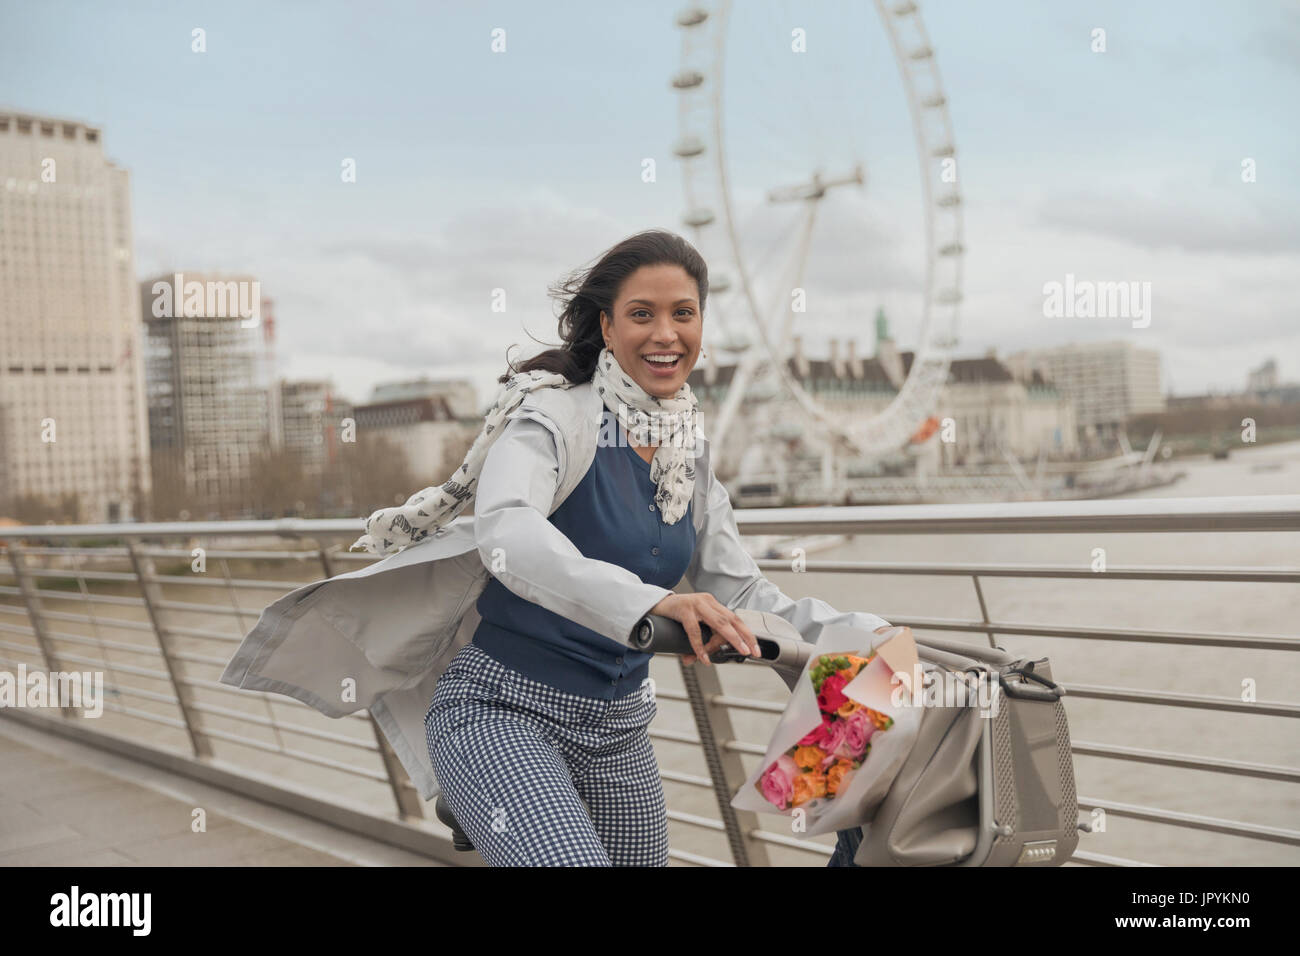 Portrait of smiling woman vélo sur pont sur la rivière Thames, près de roue du millénaire, London, UK Banque D'Images